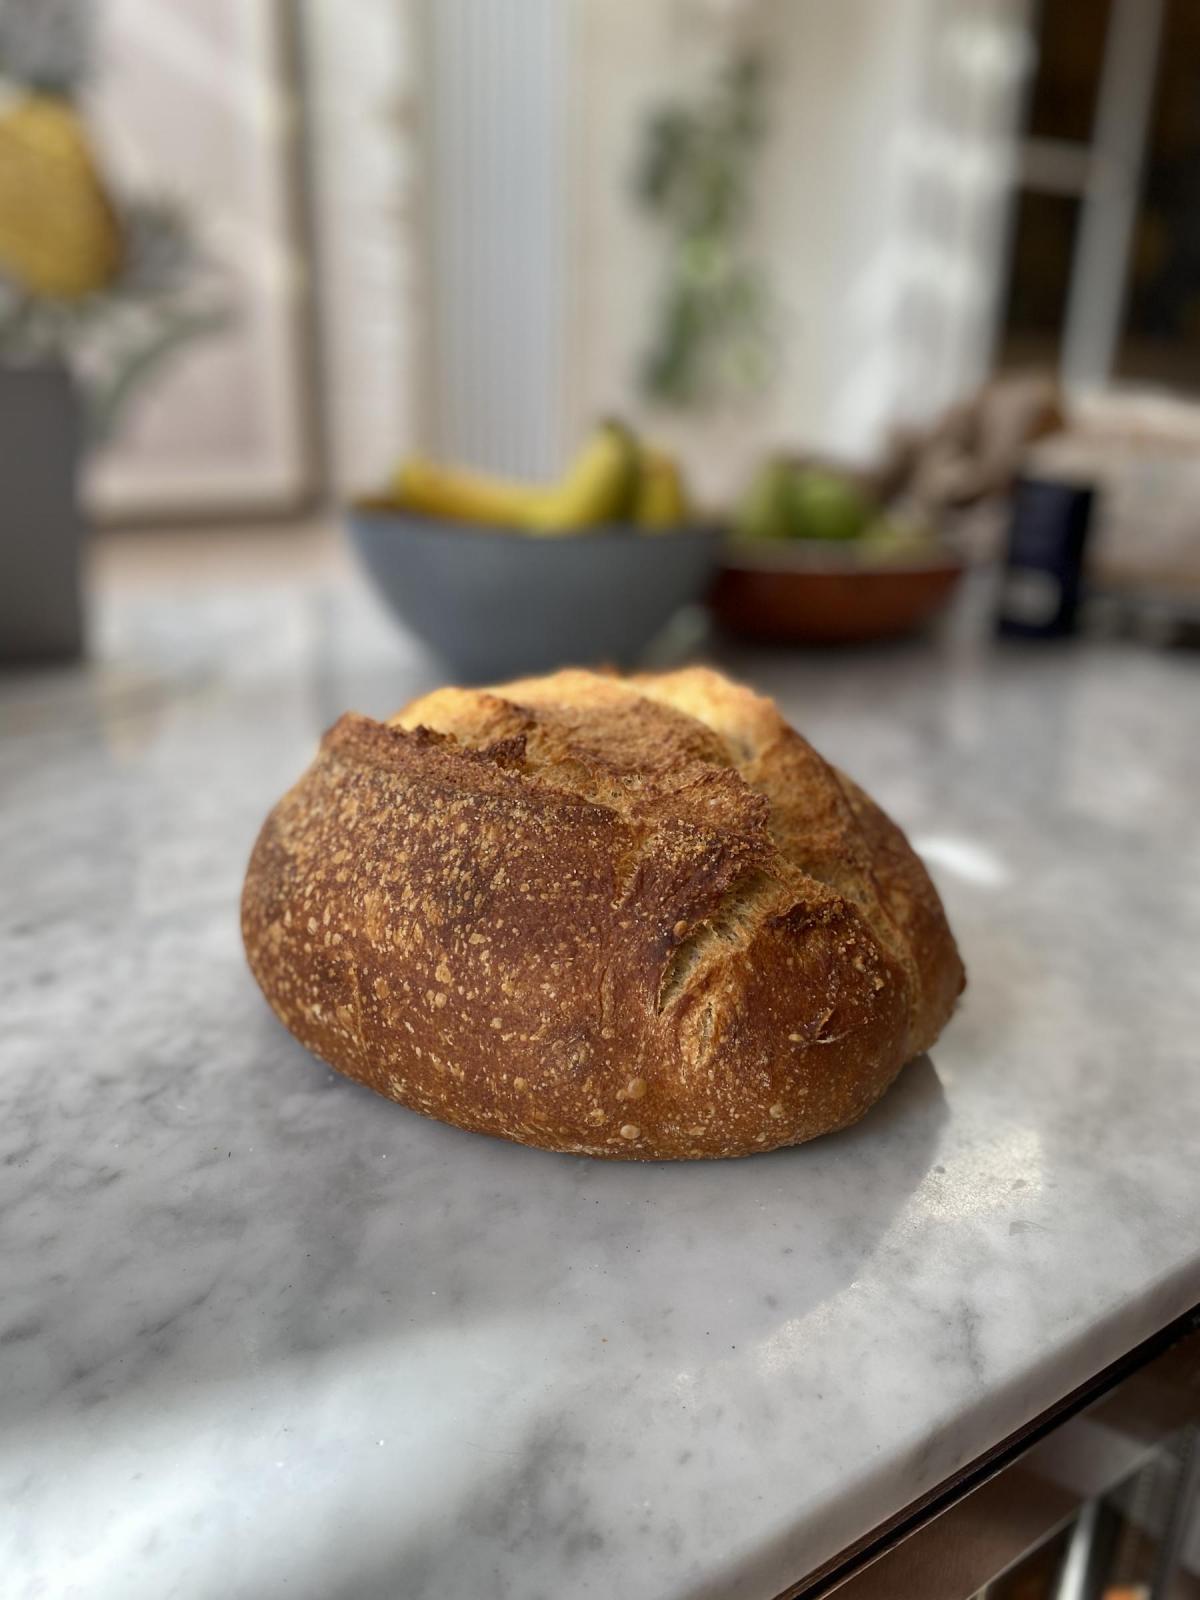 Cold bulked loaf profile